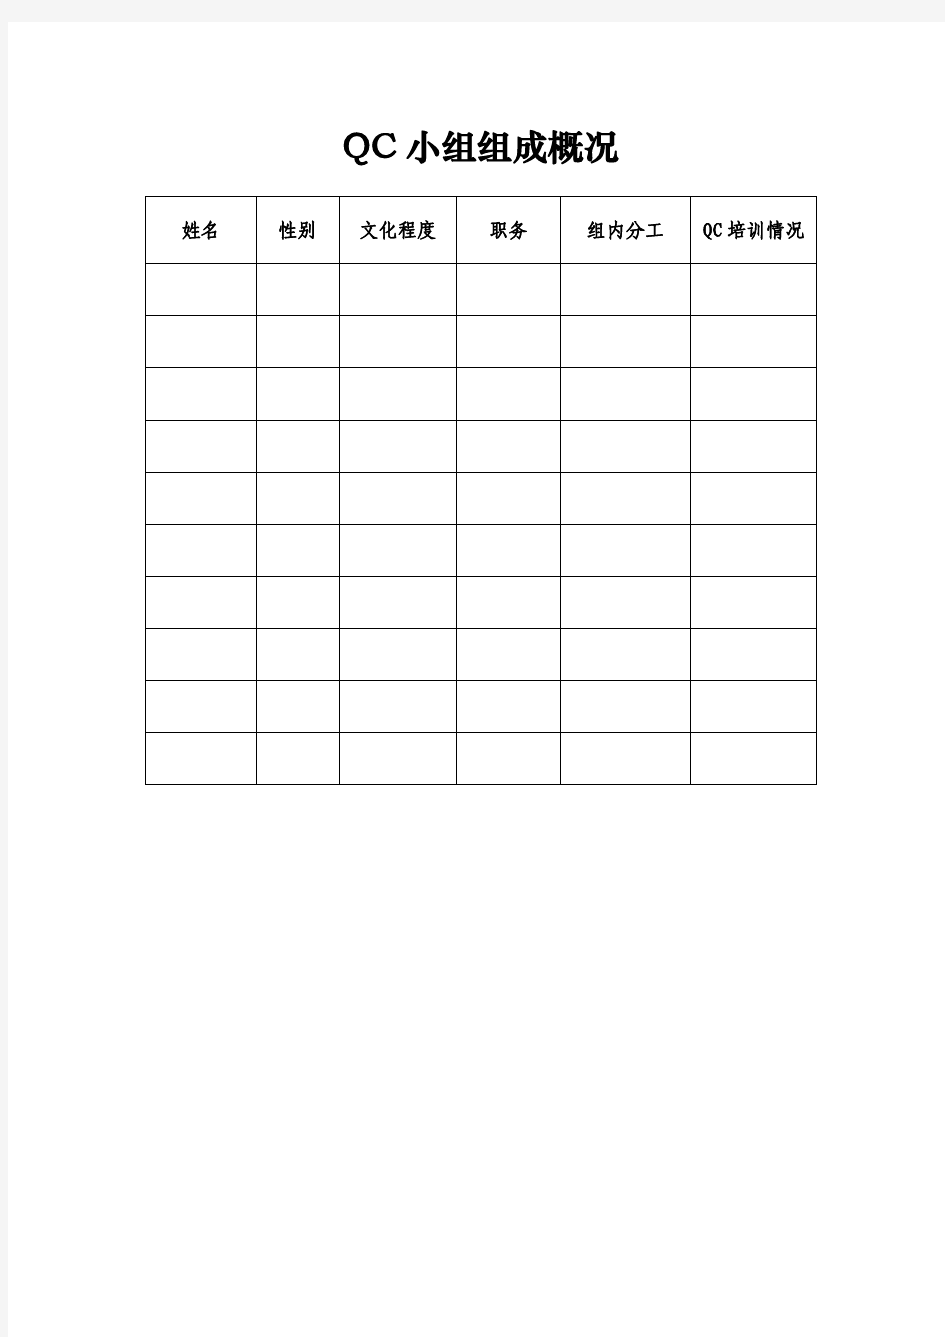 QC小组活动记录系列表格(20180613定稿)